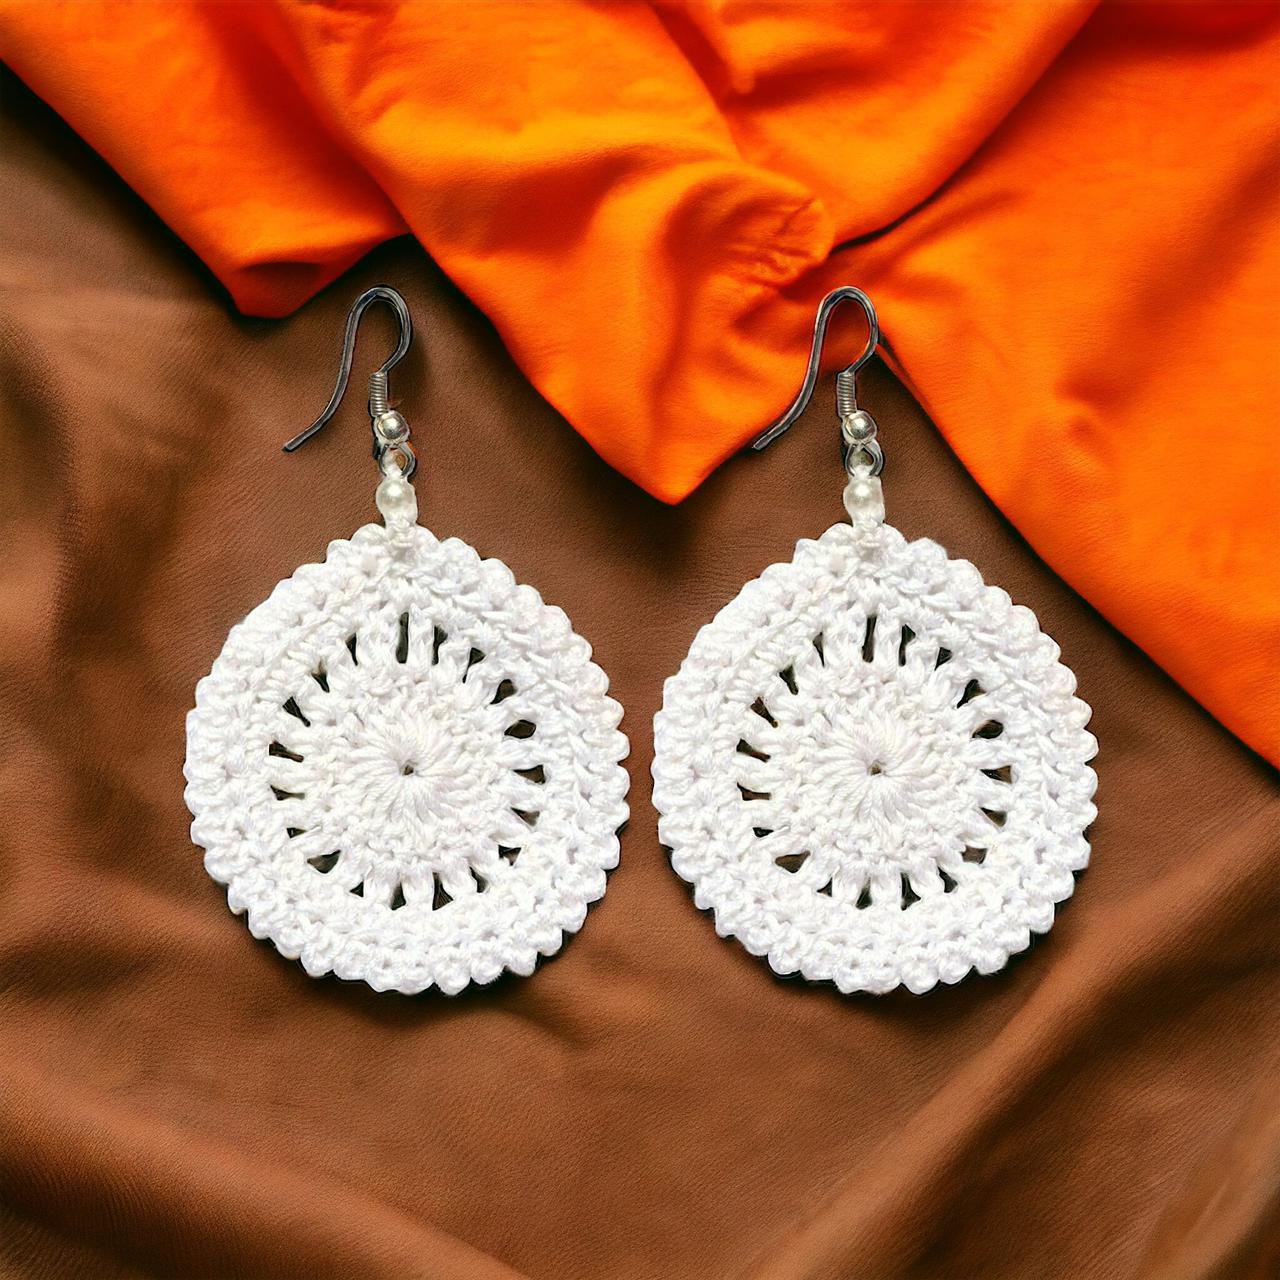 Rounded shaped Crochet earrings White